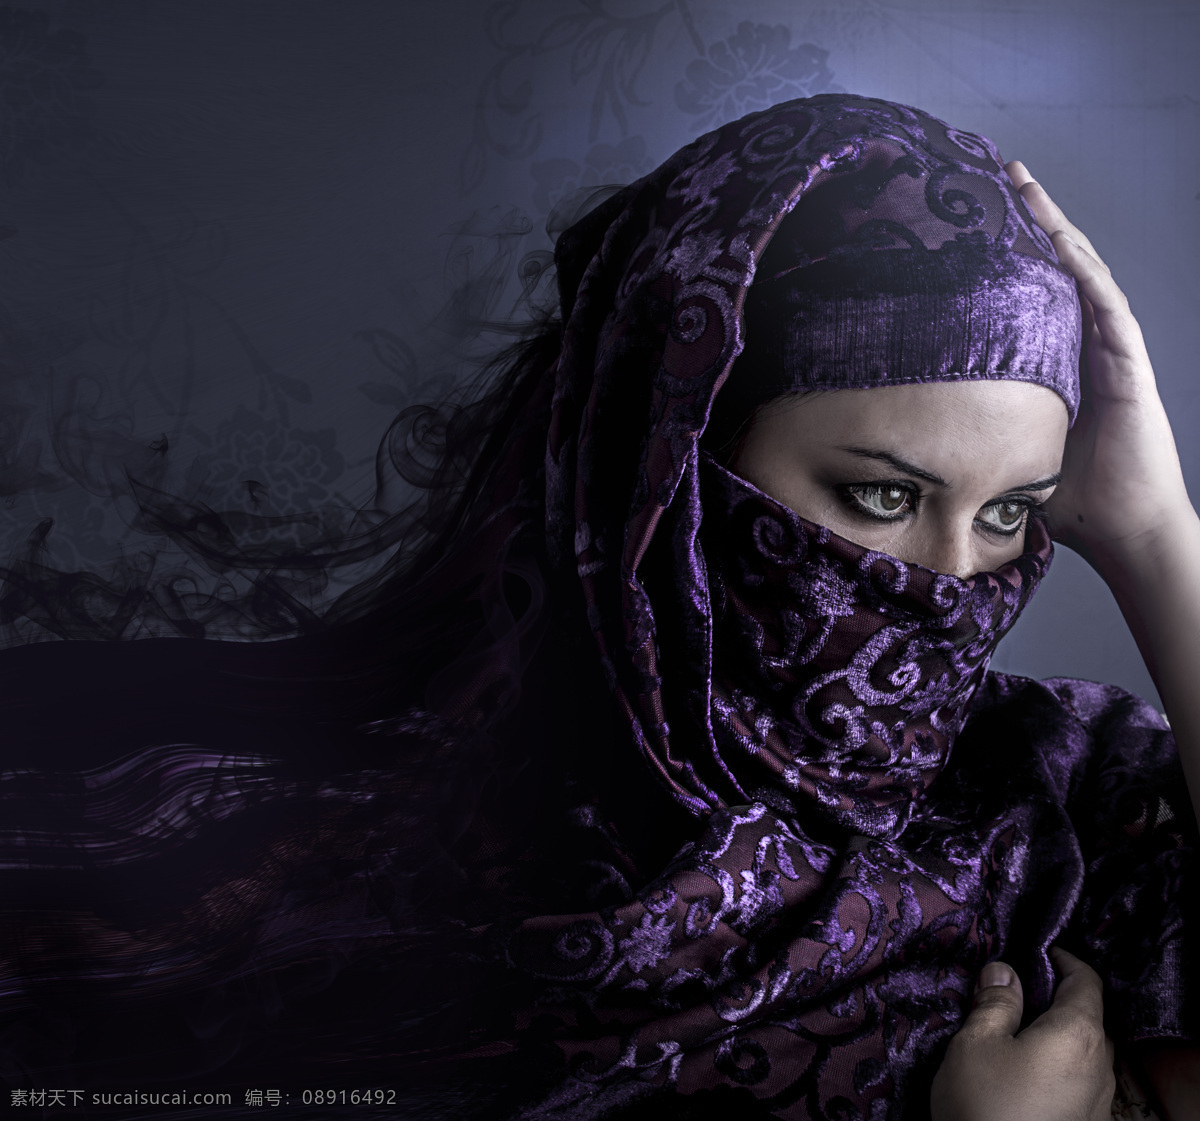 围着 紫色 头巾 女性 阿拉伯女性 伊朗女性 外国女性 蒙面 装扮 女人 美女图片 人物图片